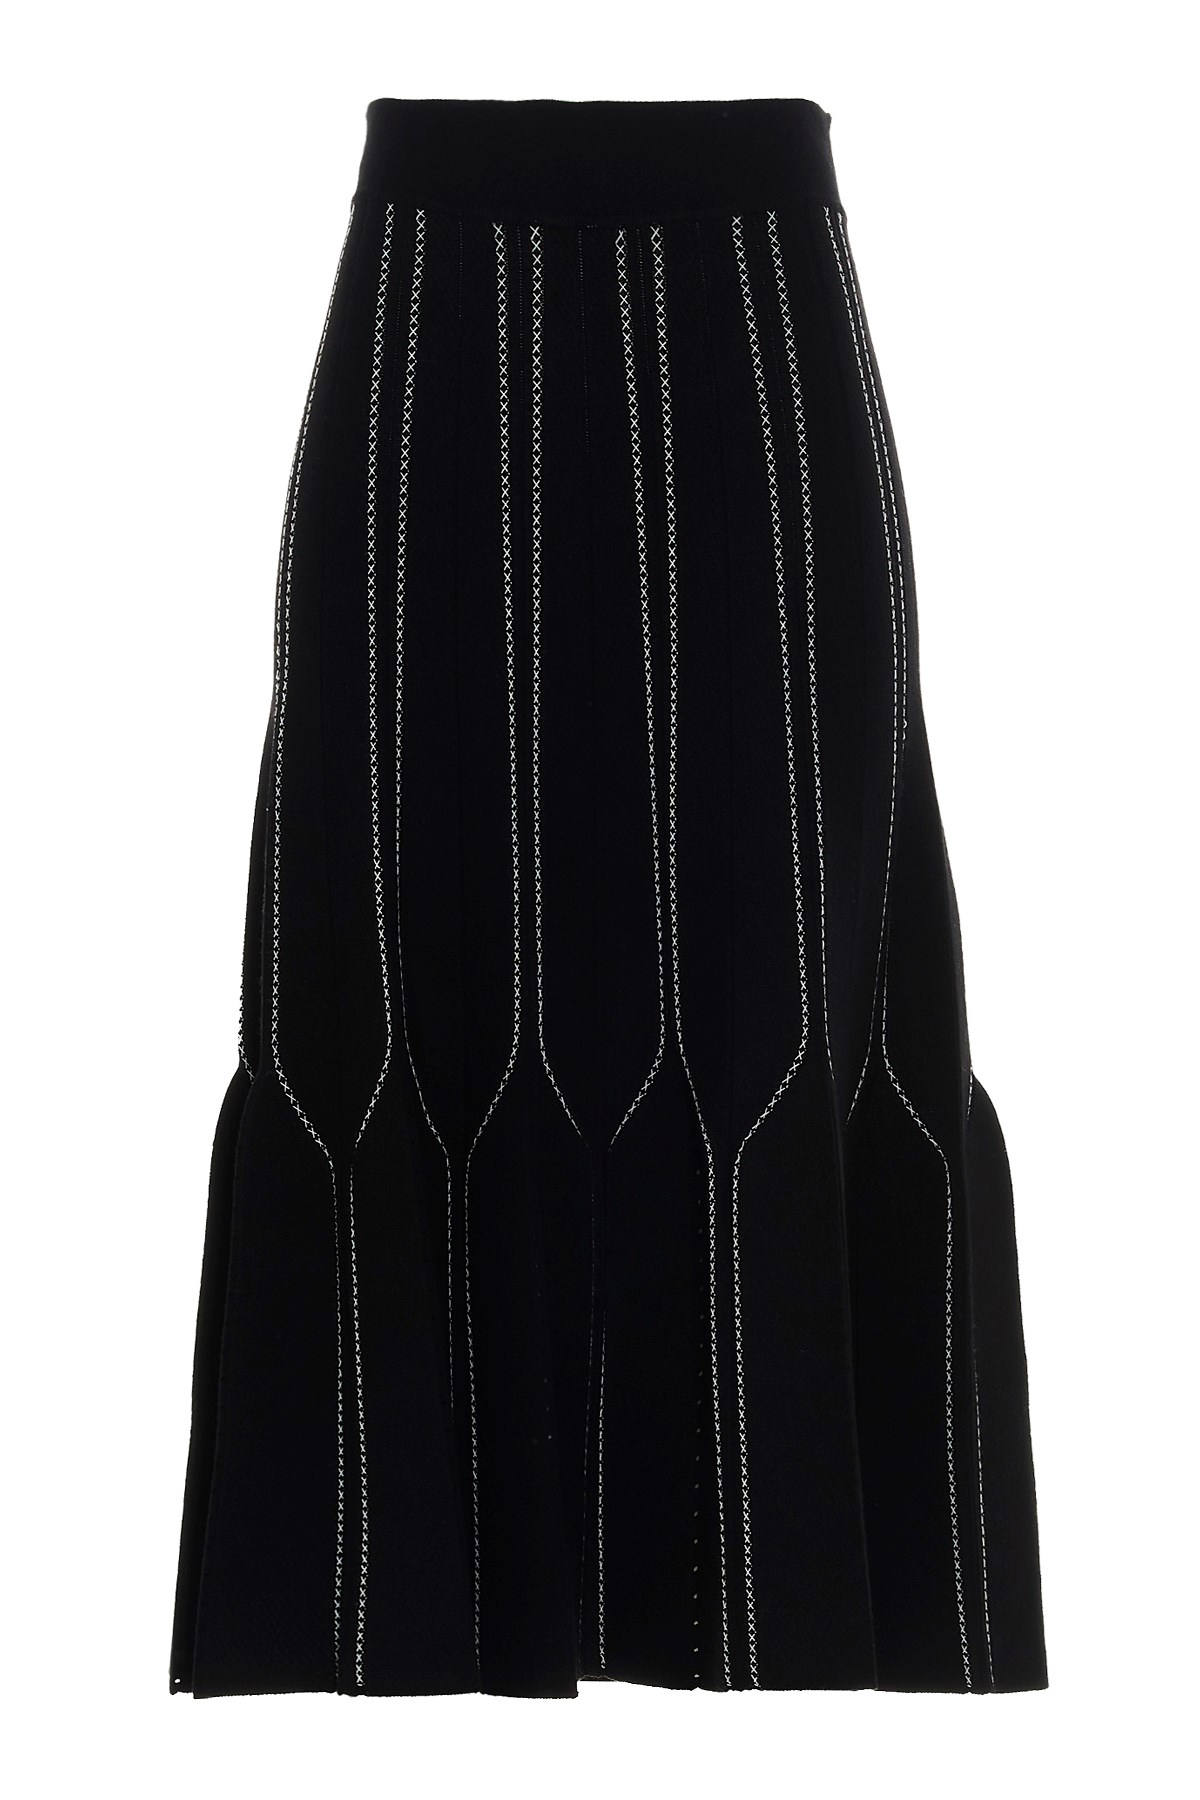 ELISABETTA FRANCHI Knitted Skirt